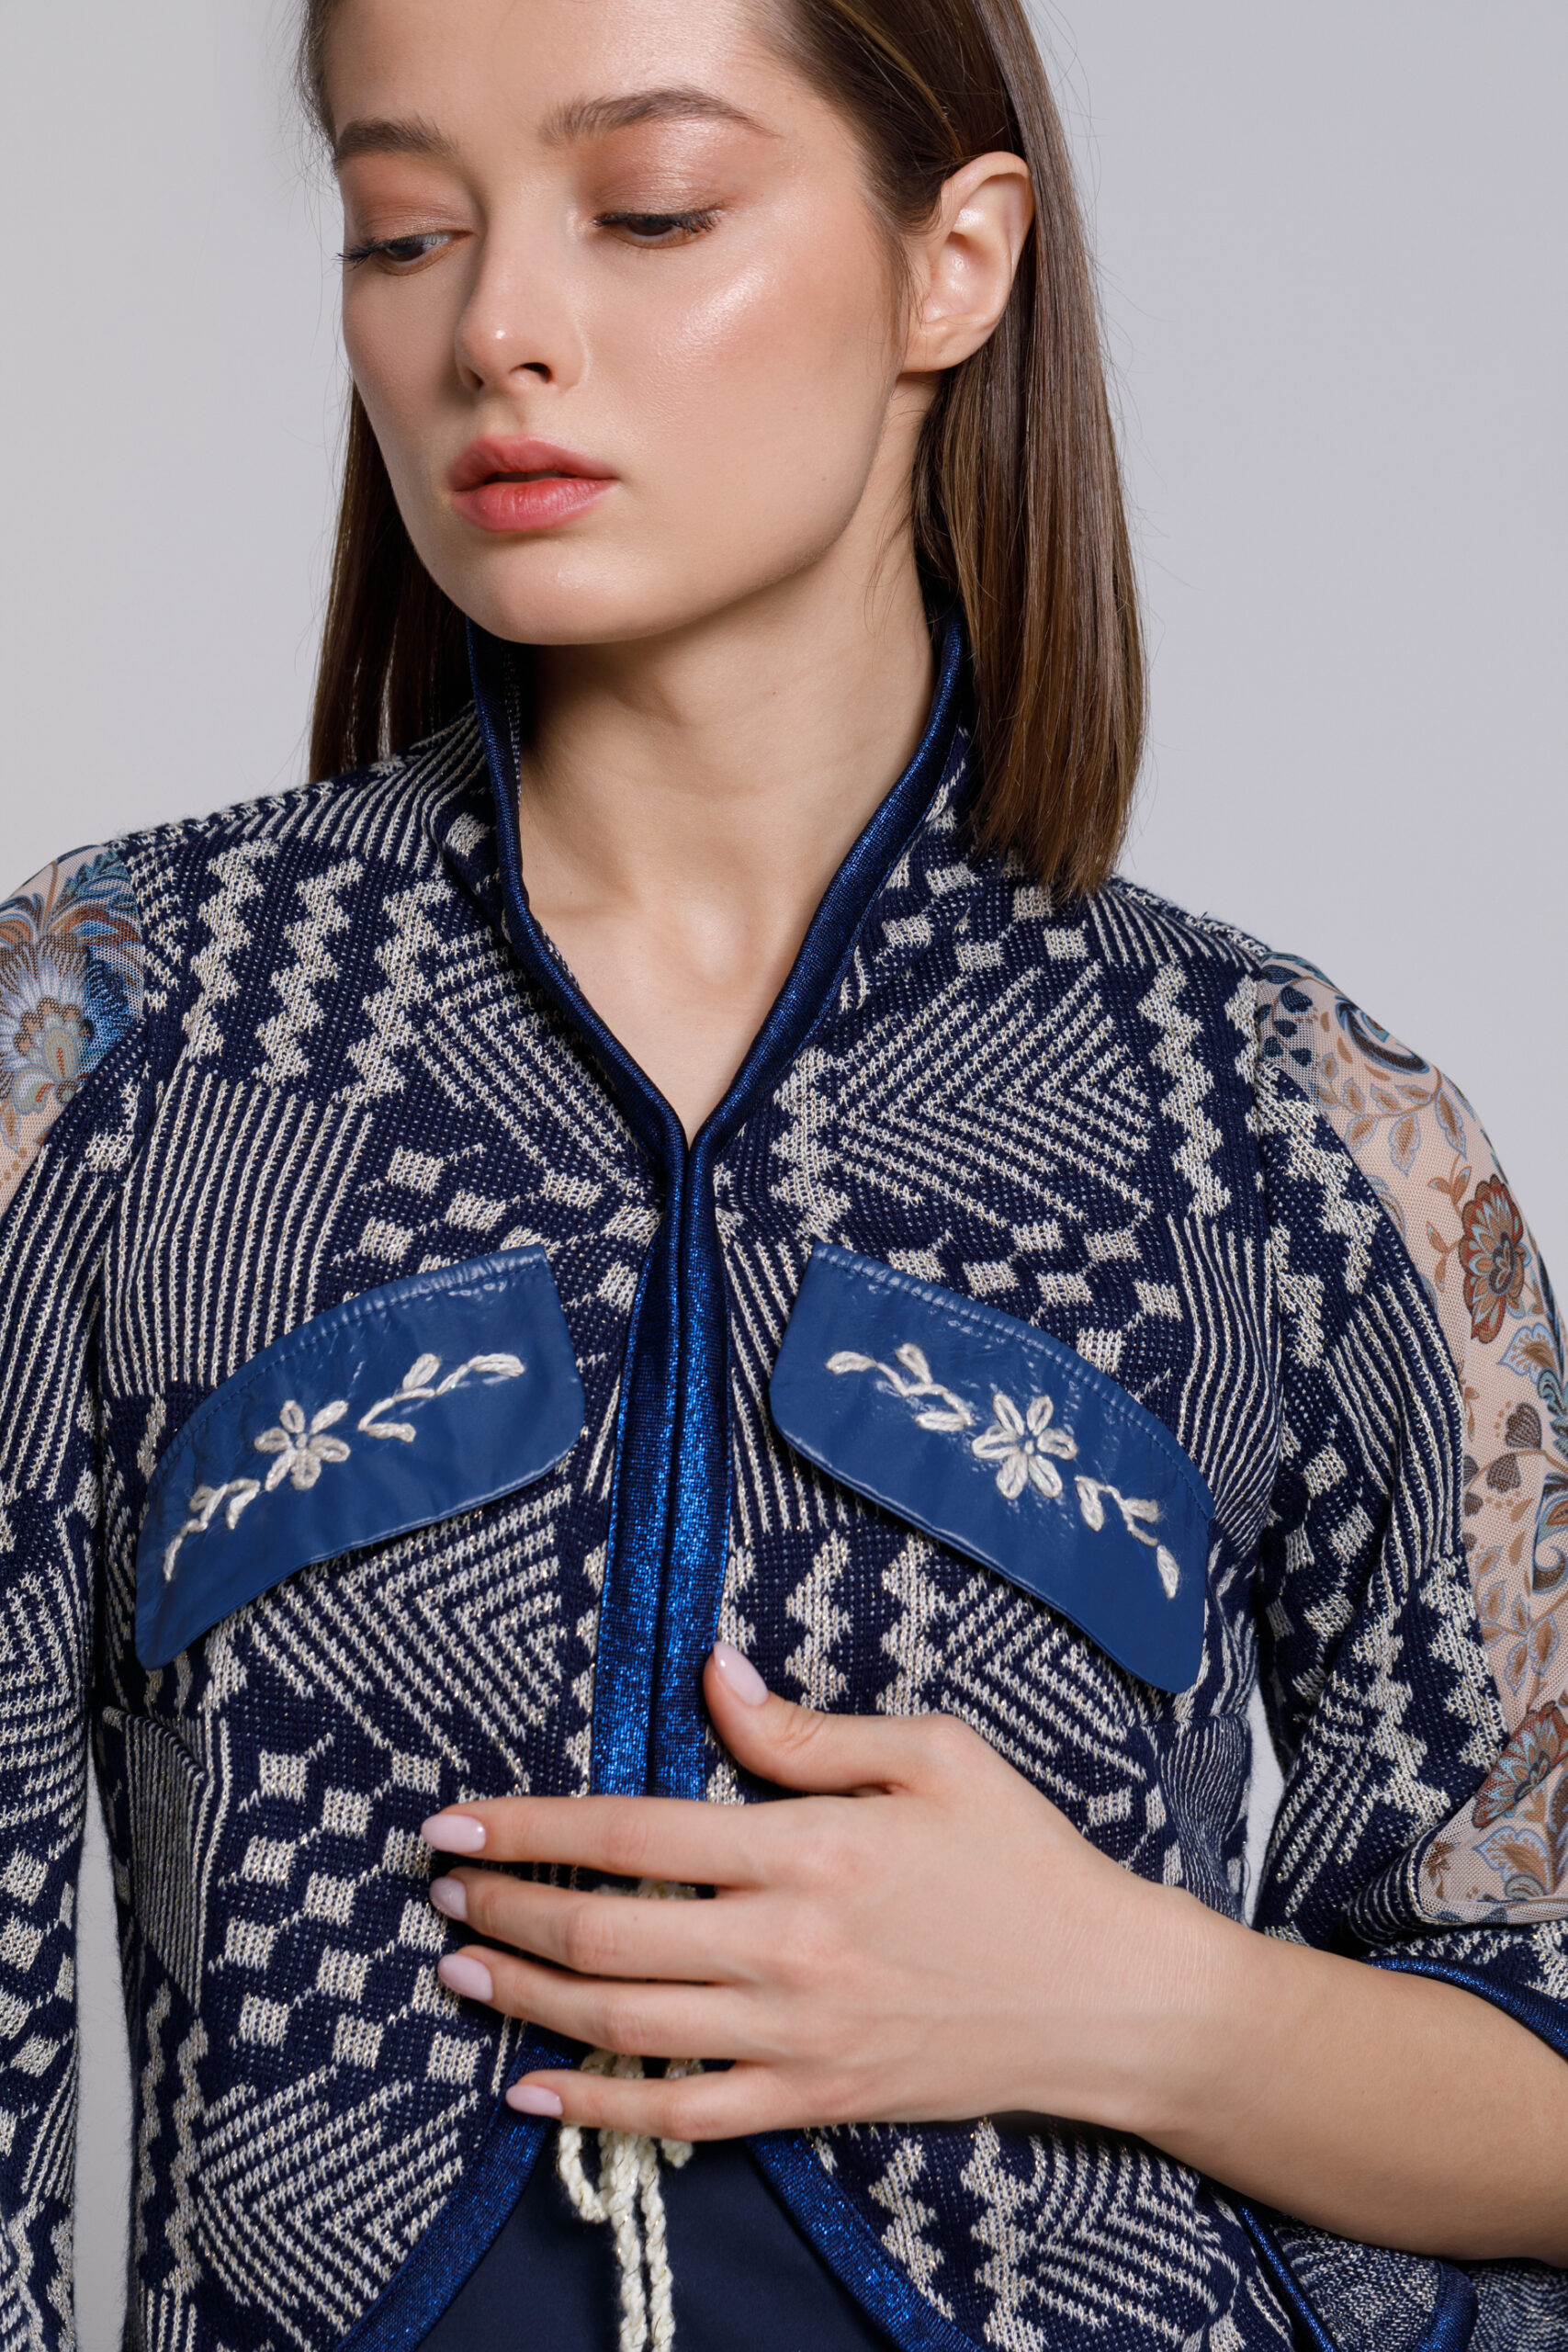 Jacheta OSIRIS cu motive geometrice tricot albastru. Materiale naturale, design unicat, cu broderie si aplicatii handmade